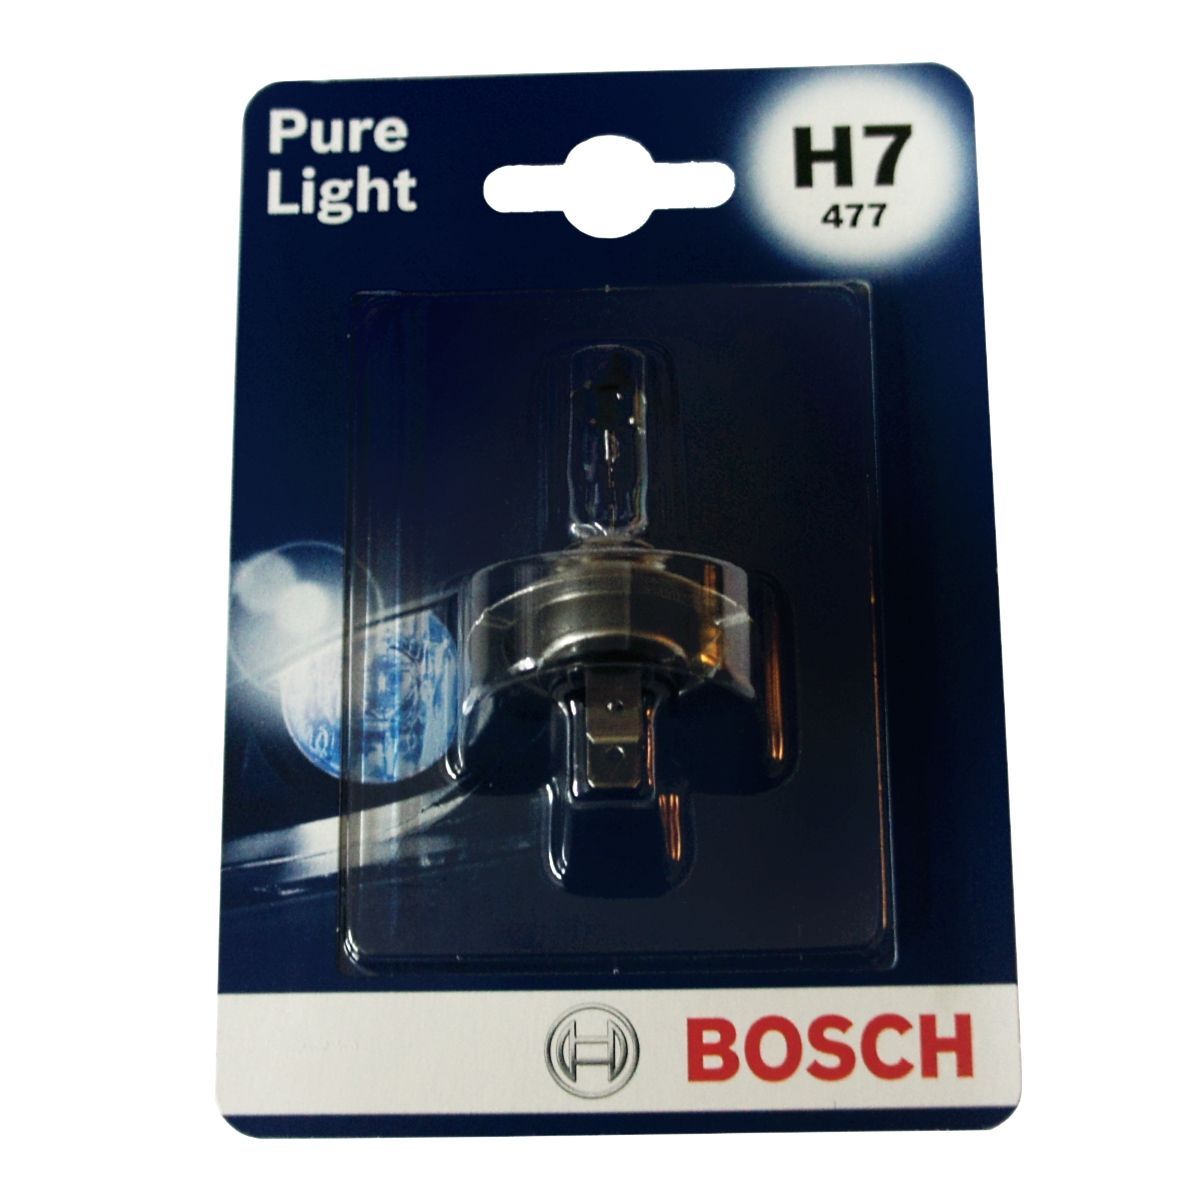 Лампа галогенная BOSCH H7 Pure Light 12V 55W, 1шт, 1987301012 лампа галогенная avs vegas hb4 9006 12v 55w 1шт a78486s